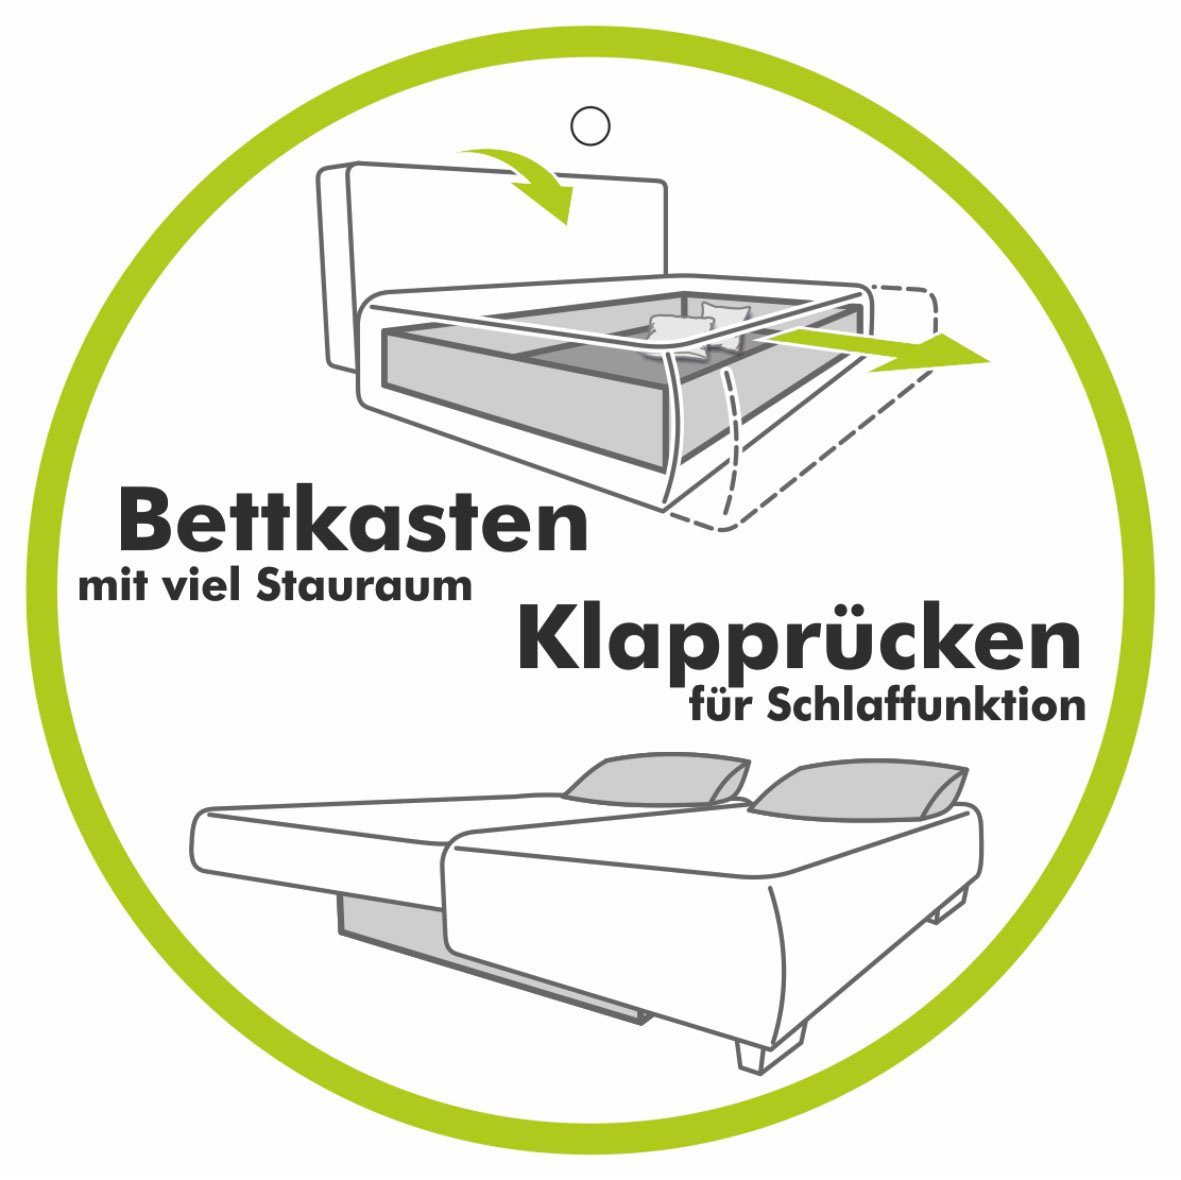 Jockenhöfer Gruppe Stauraum/Bettkasten, inklusive Yann, Bettfunktion, Schlafsofa verstellbare Armlehnen